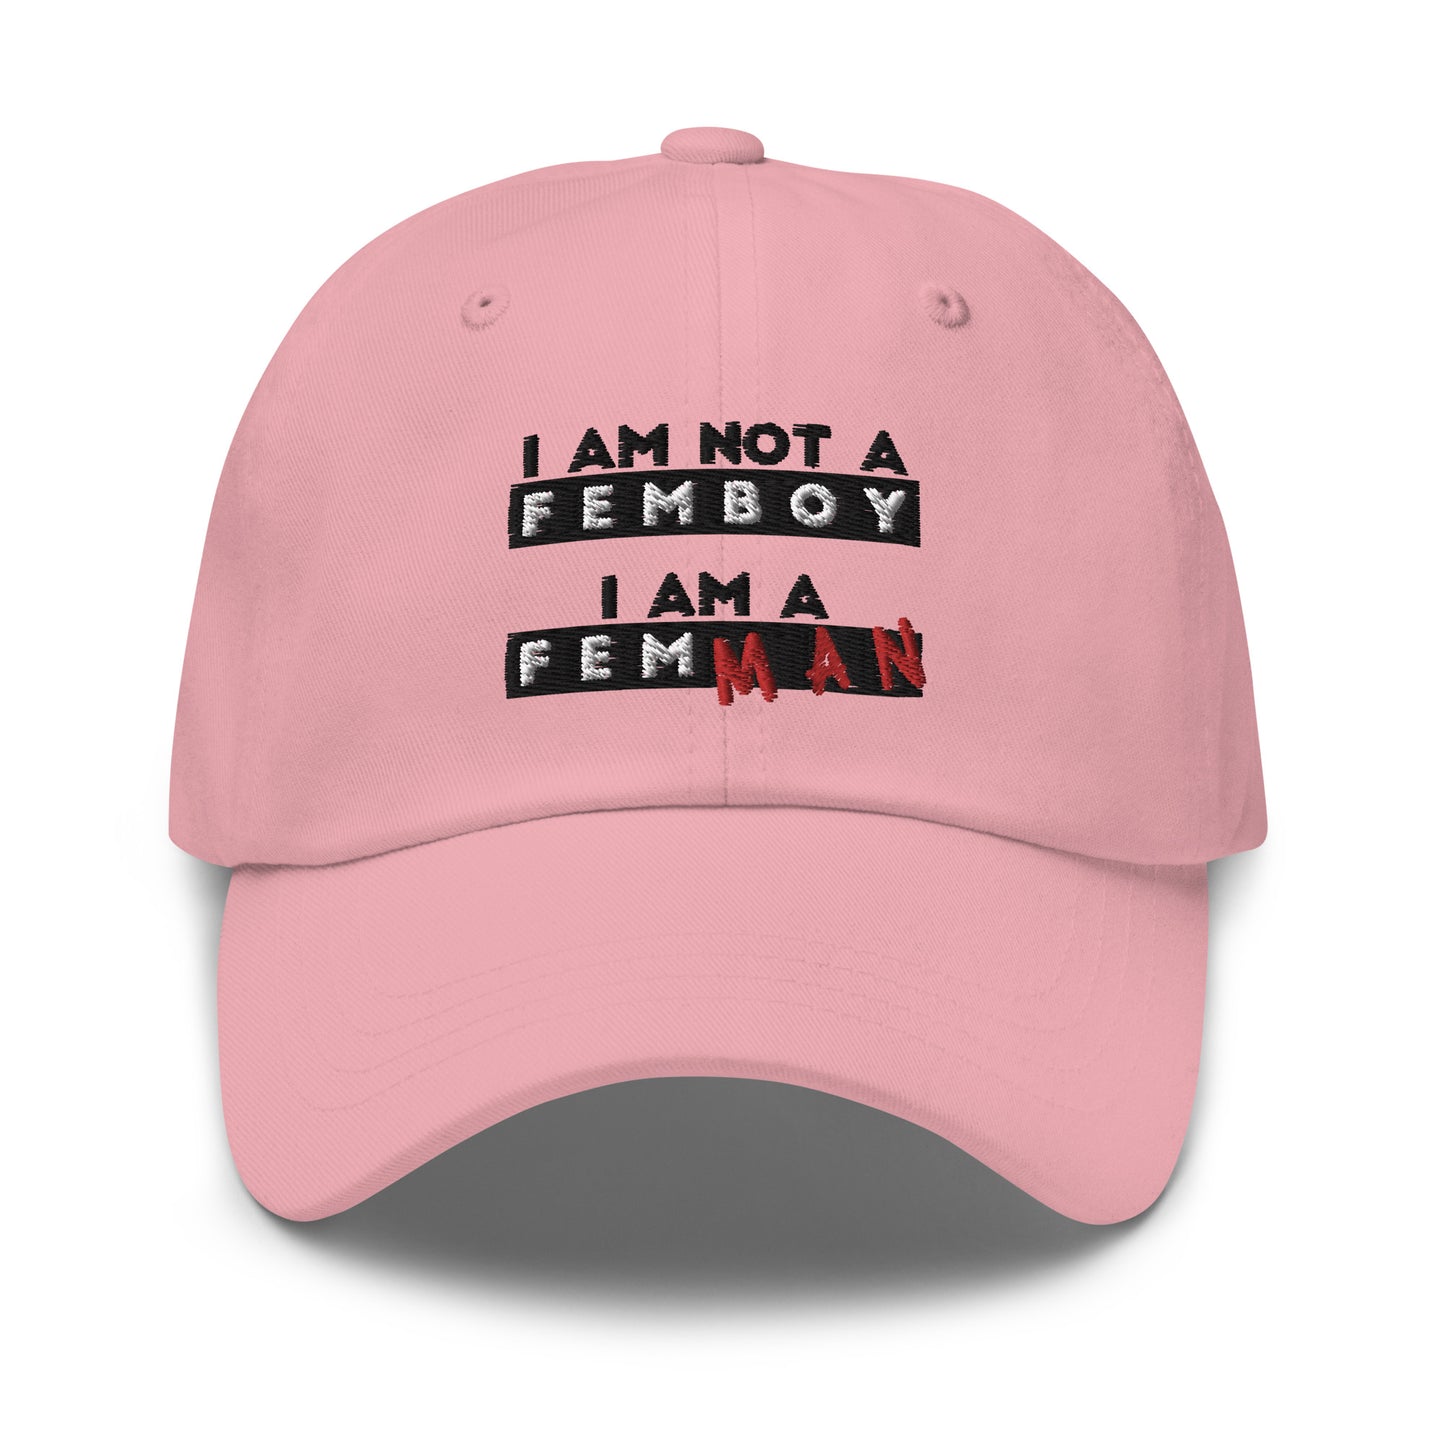 I Am Not a Femboy I Am a Femman hat